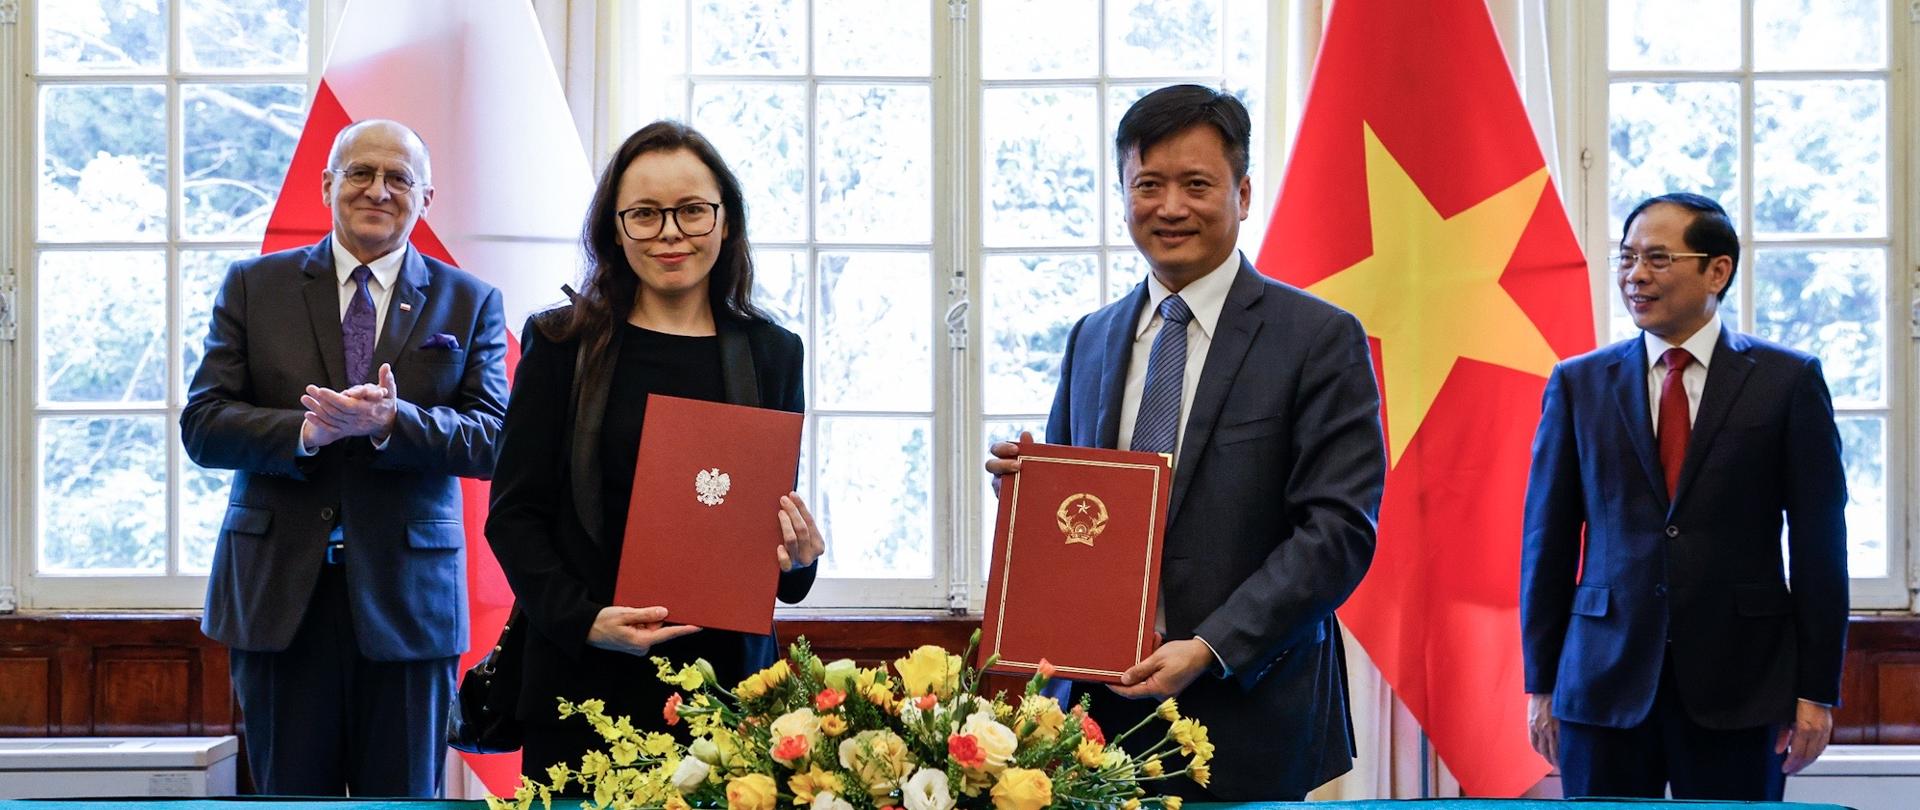 Umowa o współpracy w zakresie szkoleń dyplomatycznych